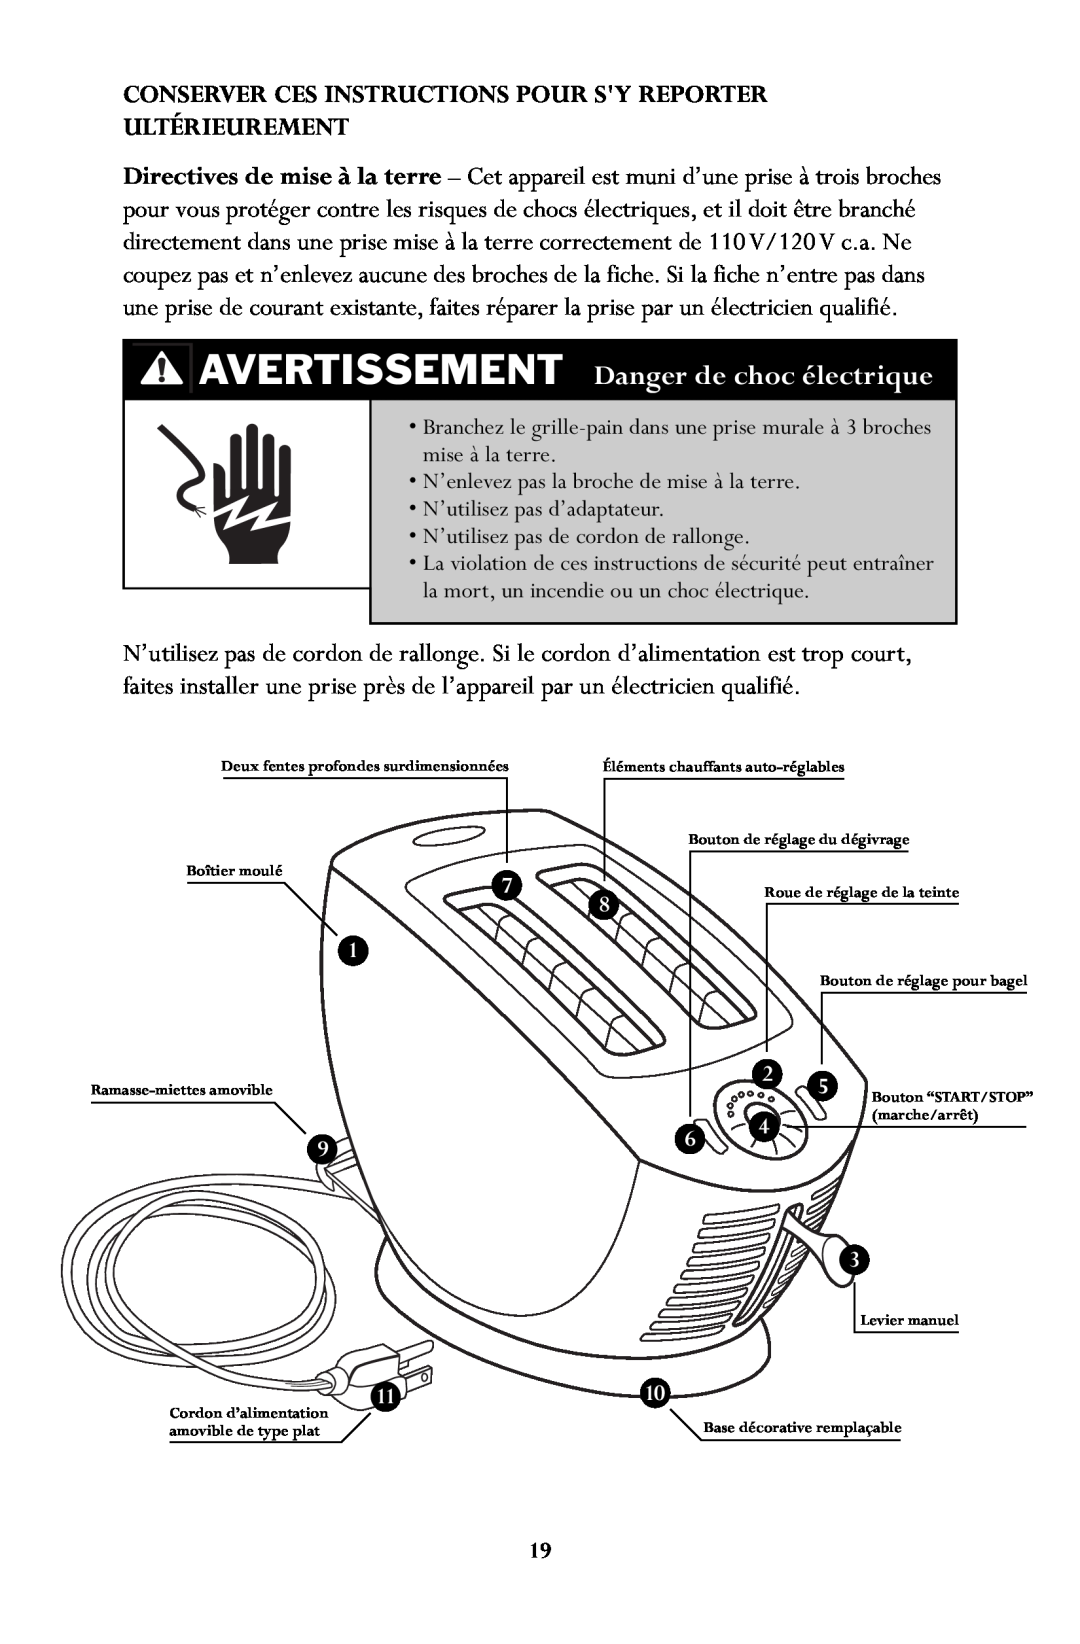 Jenn-Air JTO500 manual AVERTISSEMENT Danger de choc électrique, Conserver Ces Instructions Pour Sy Reporter, Ultérieurement 